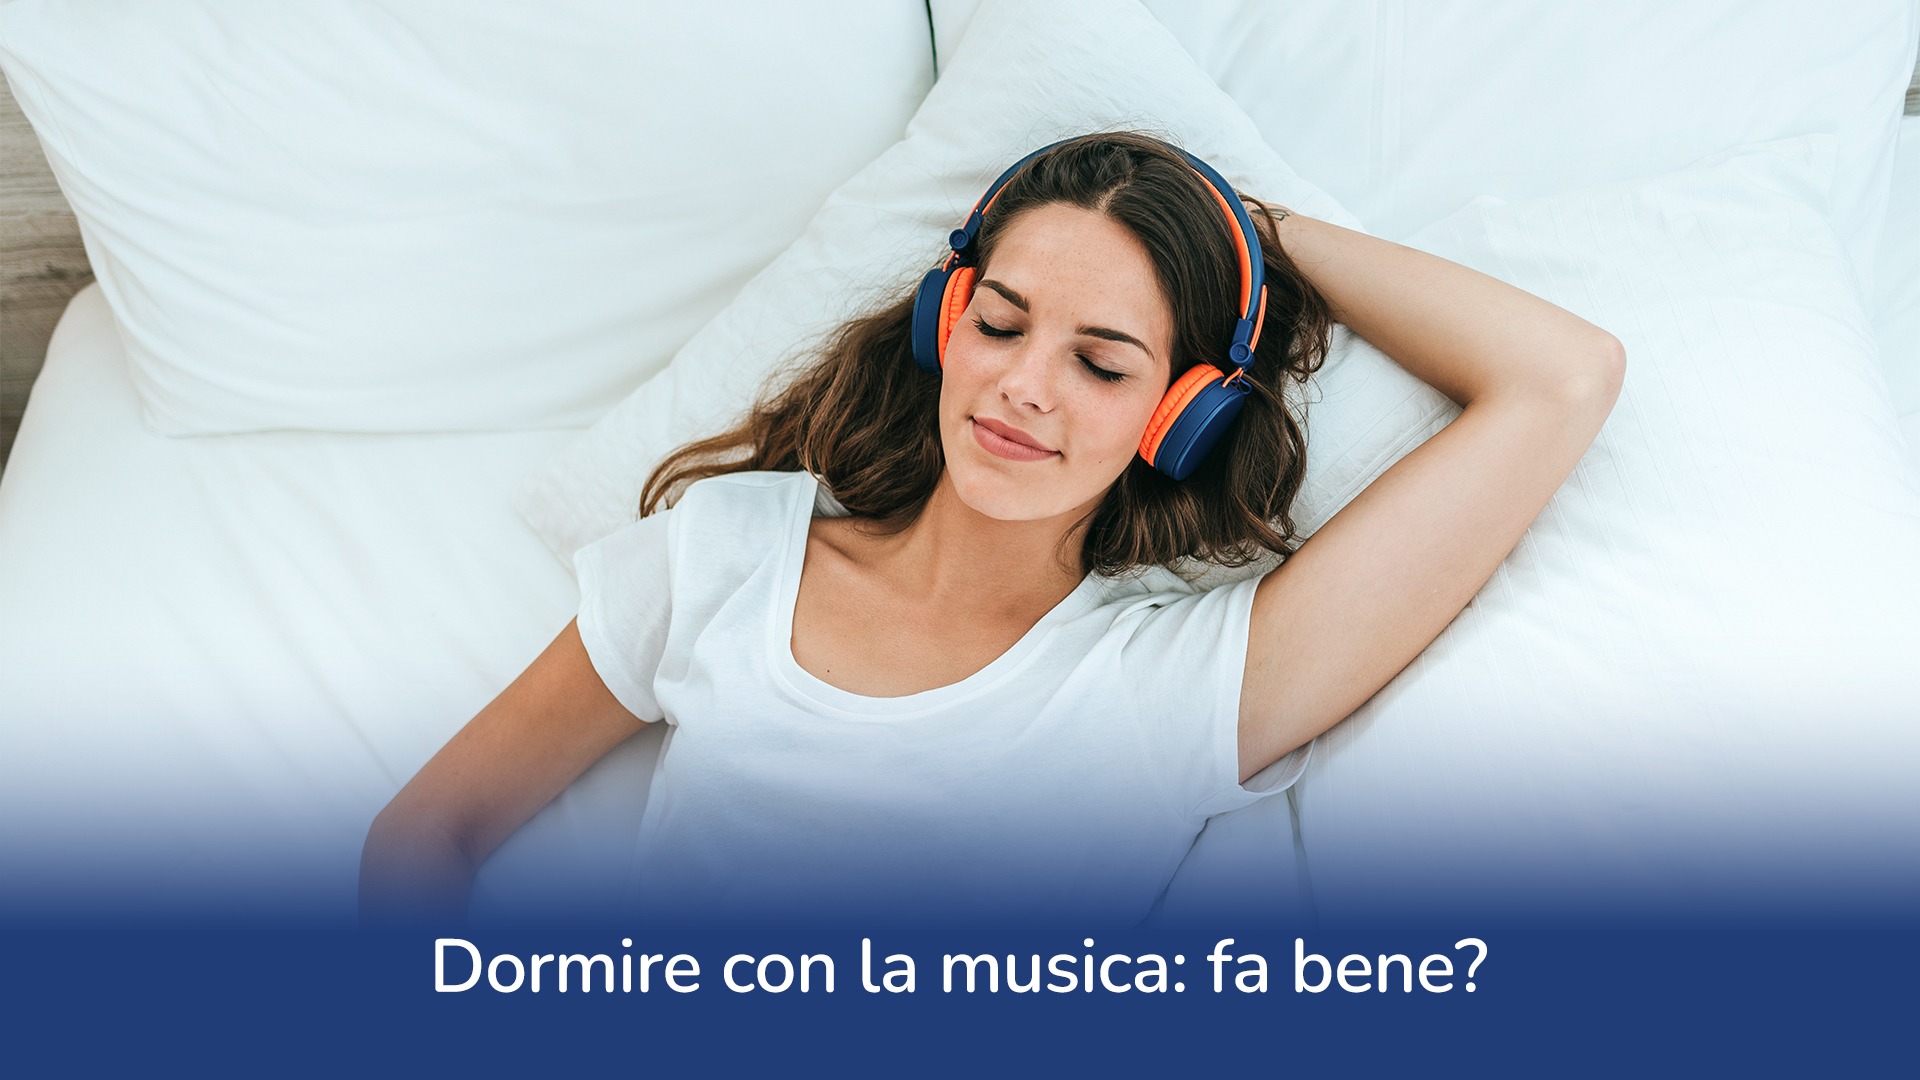 Dormire con la musica: fa bene?